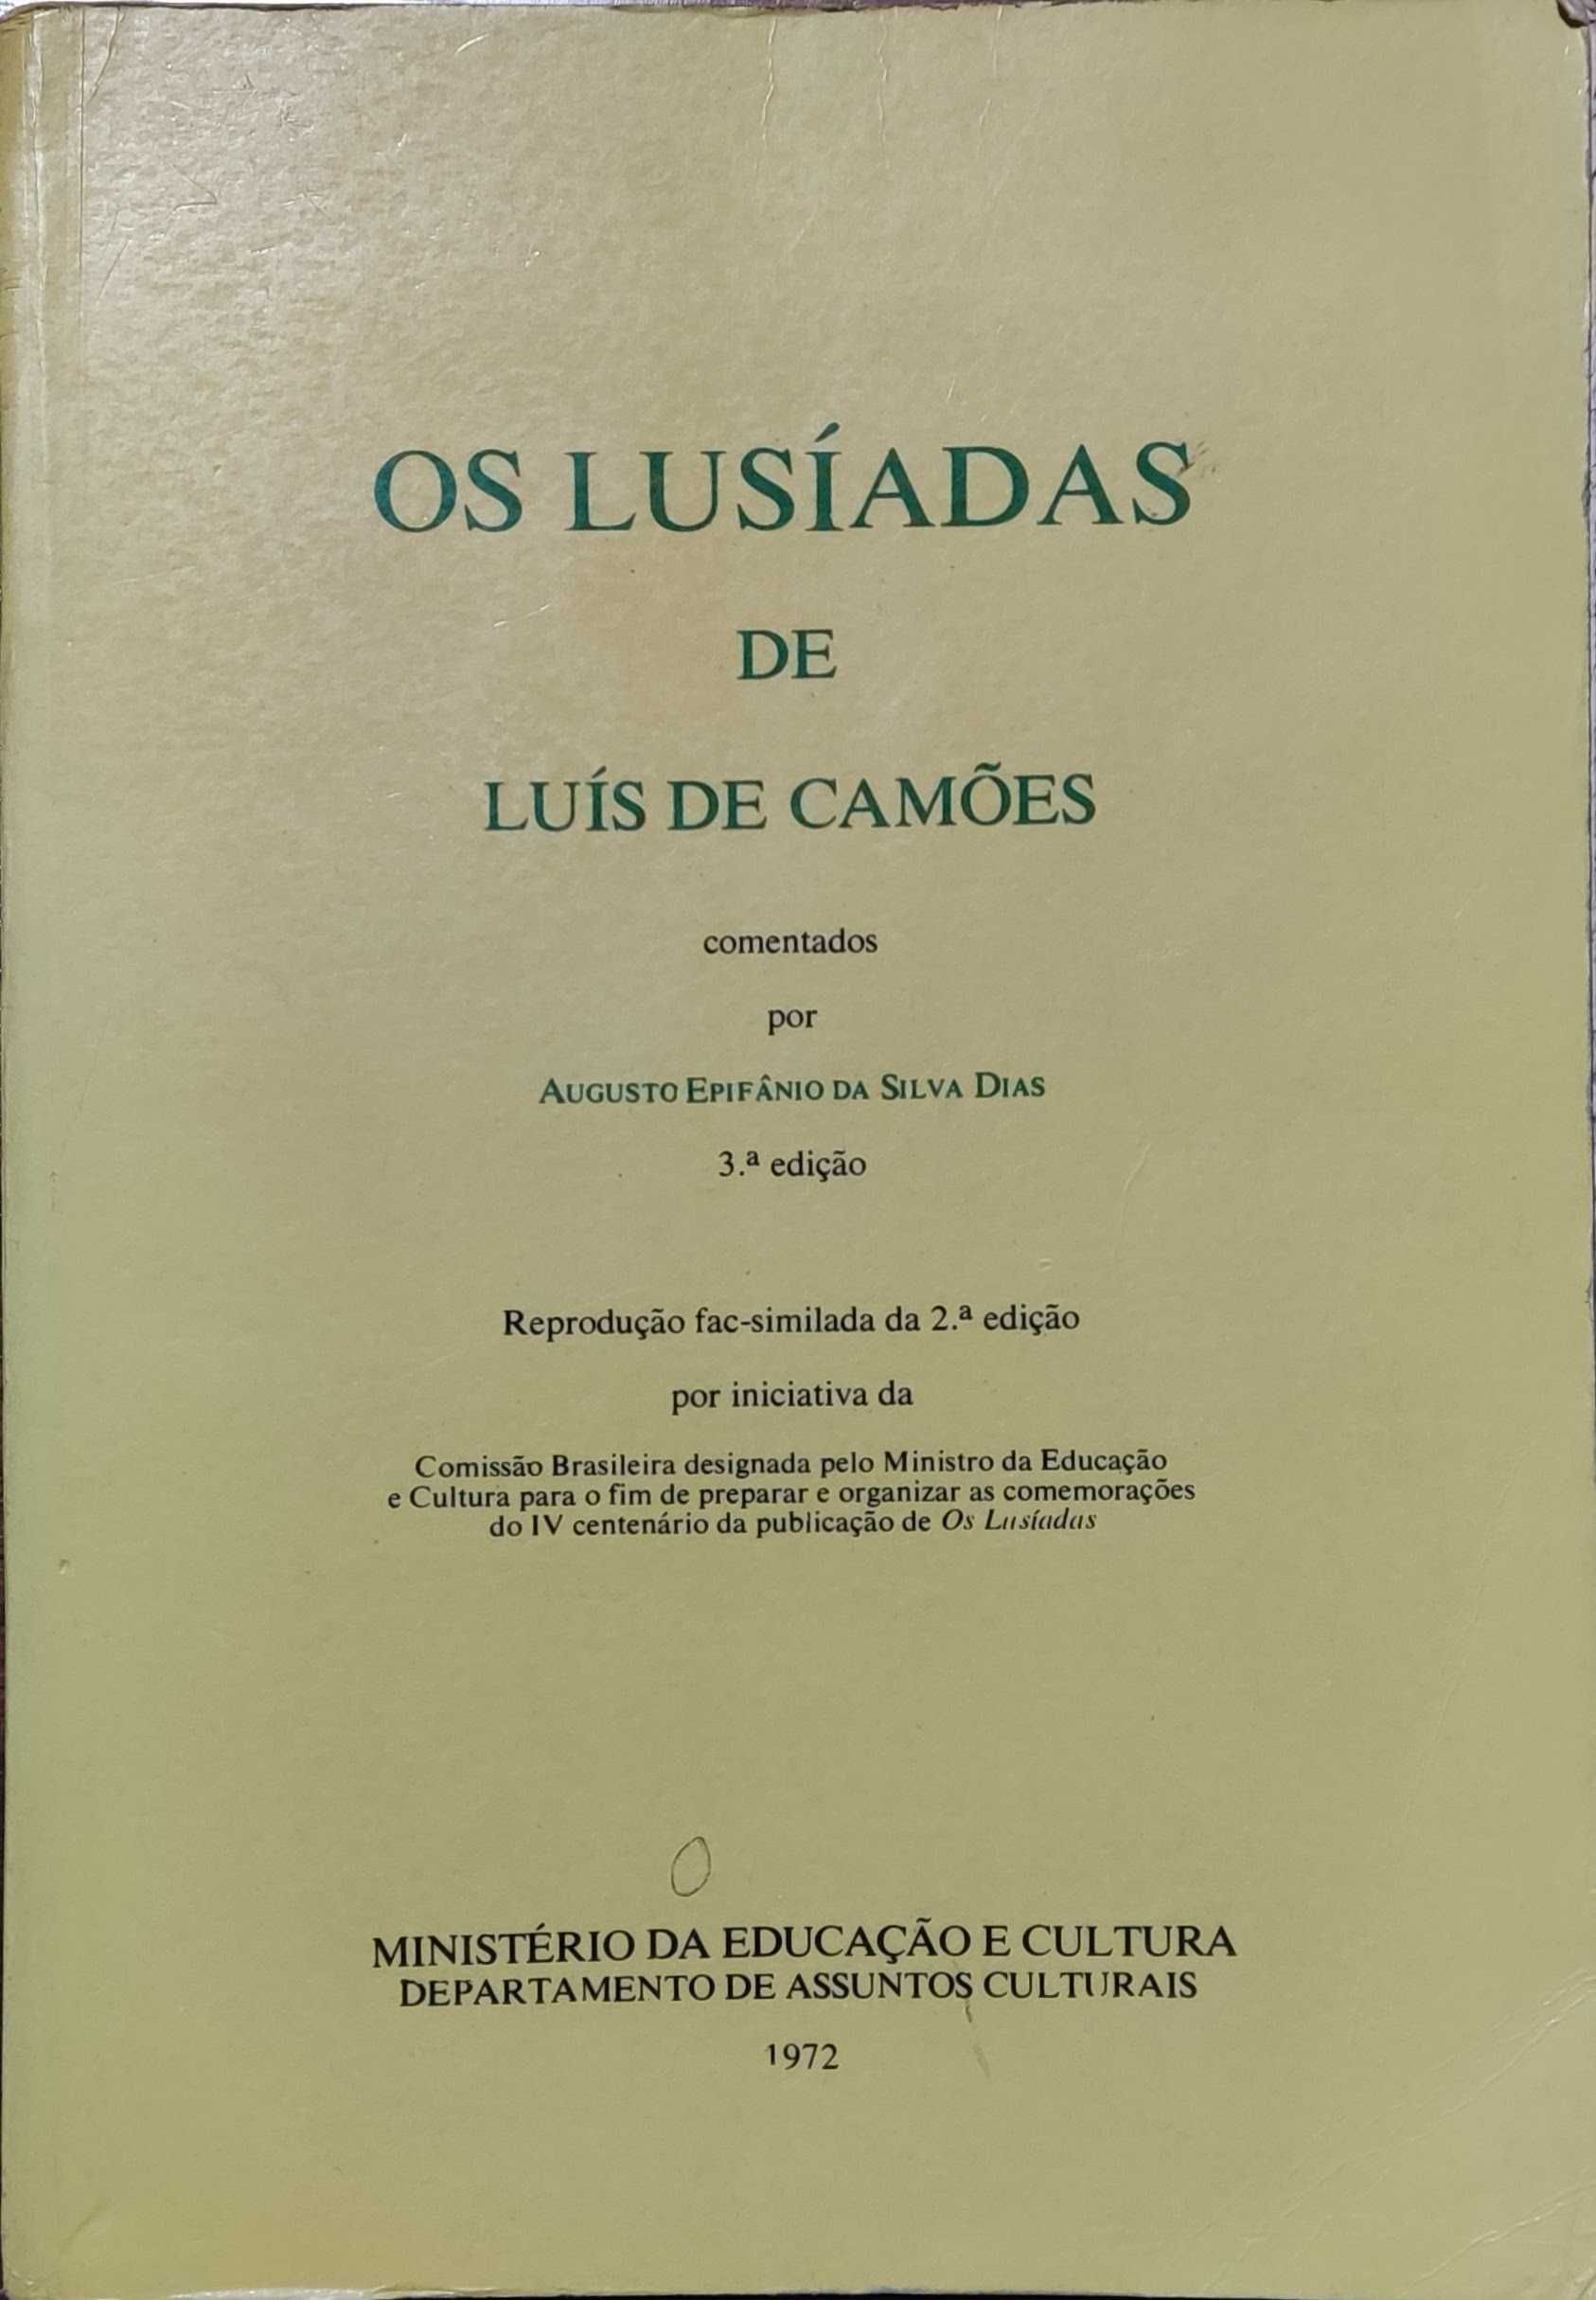 Livro "Os Lusíadas" de Luís de Camões (comentado)